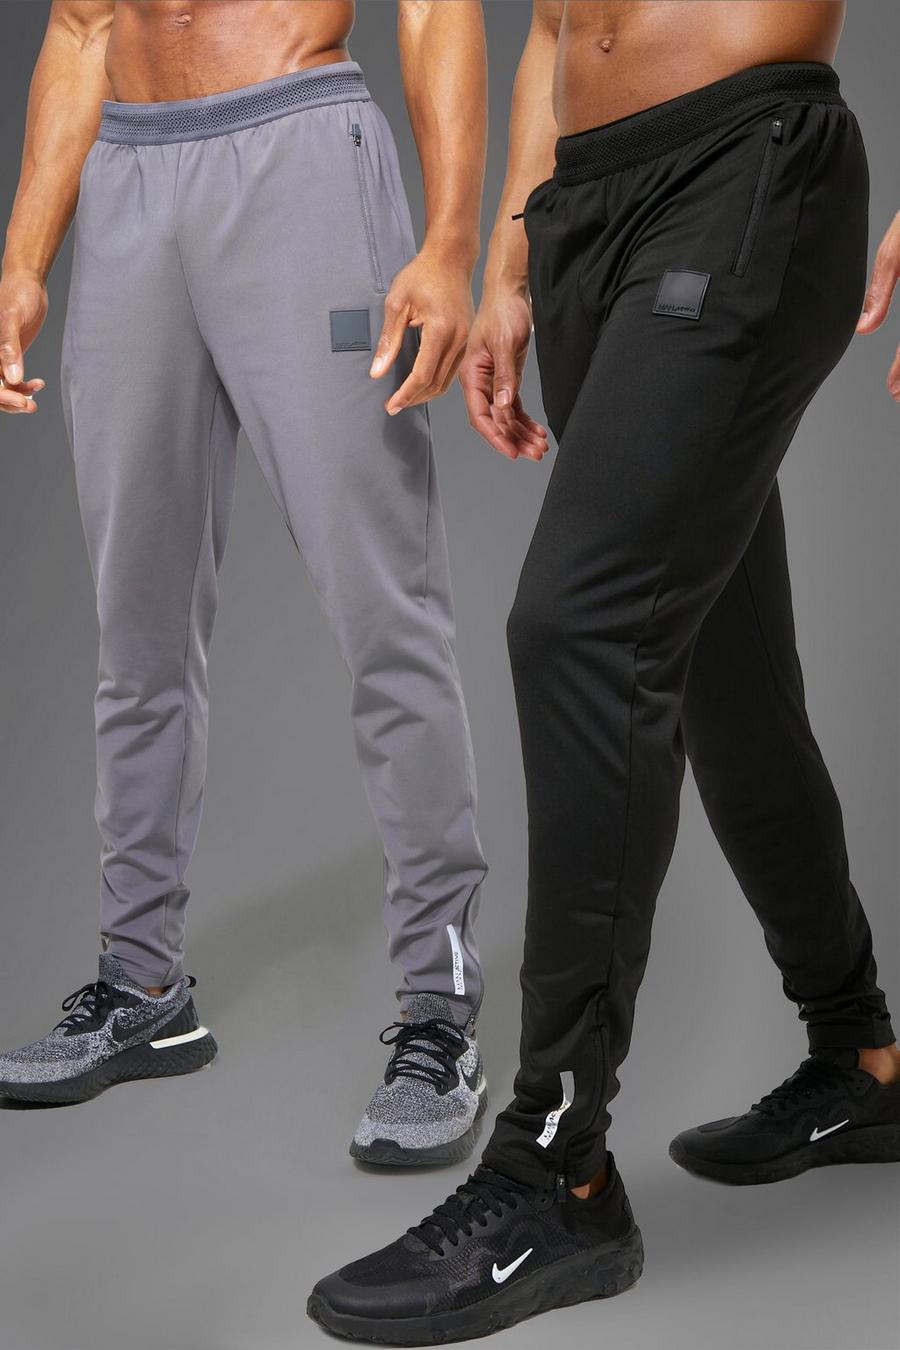 Pack de 2 pantalones deportivos MAN Active resistentes, Multi multicolor